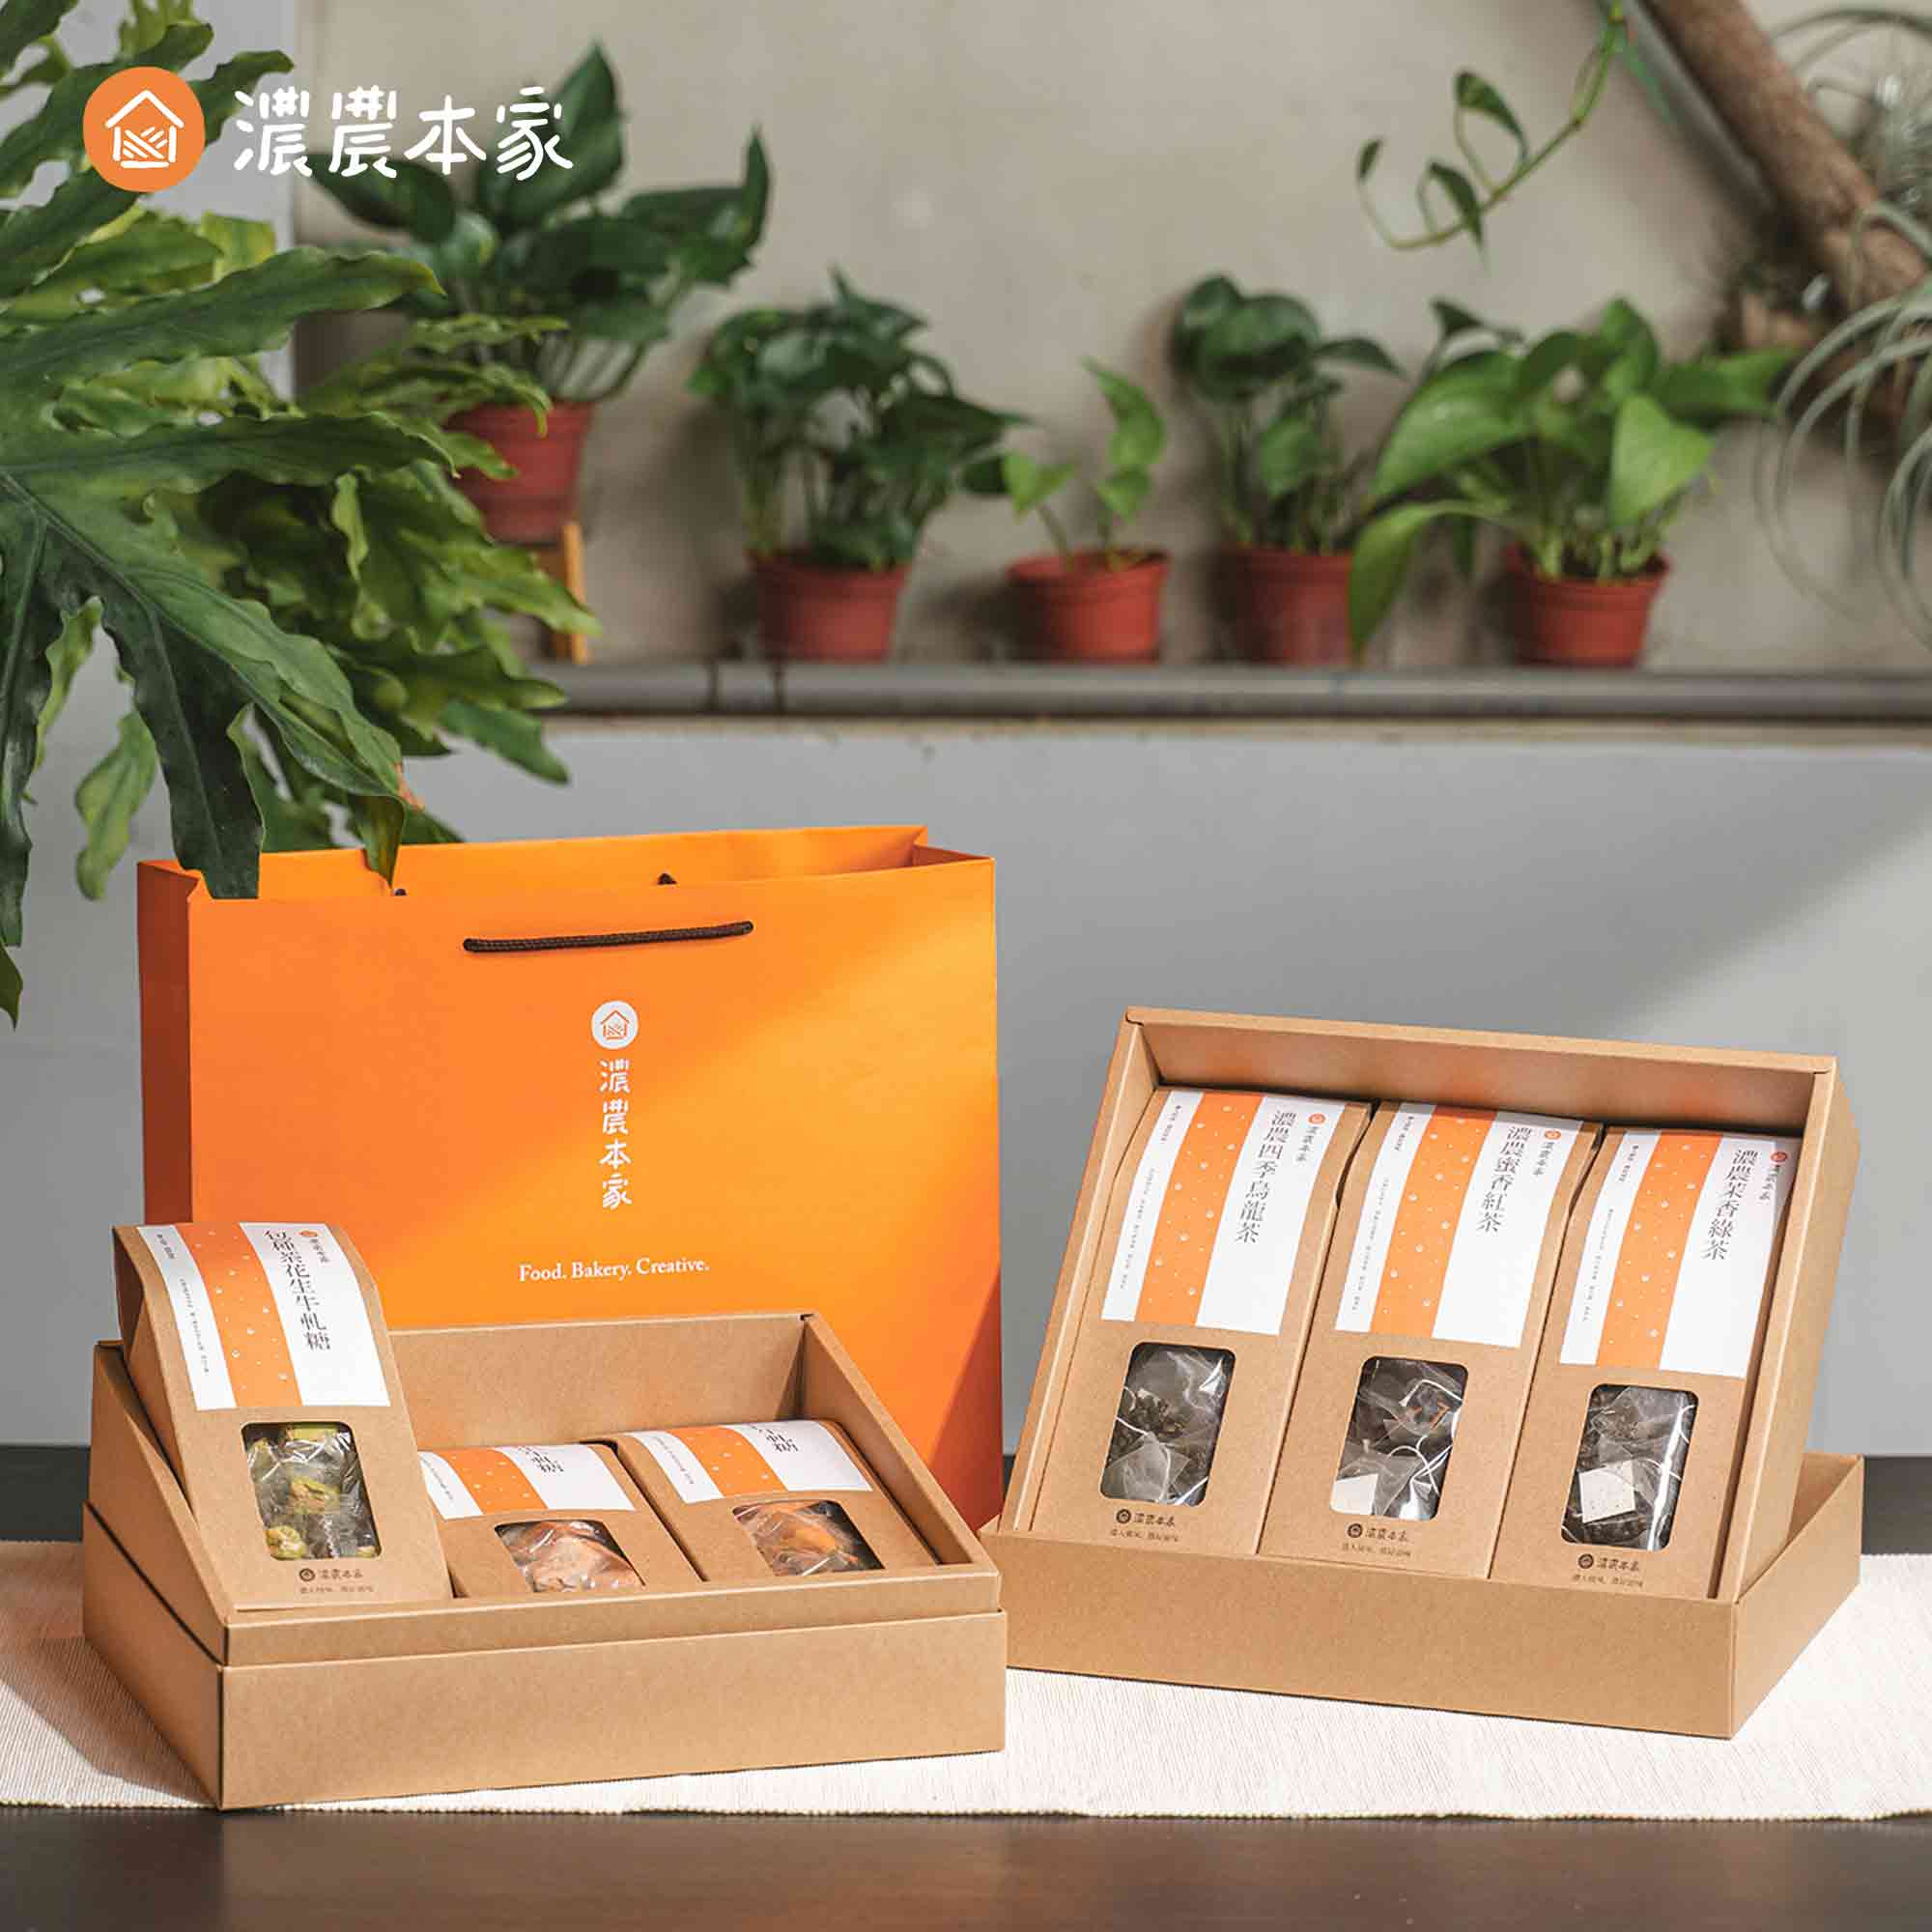 新年禮物推薦能代表台灣特色的伴手禮盒